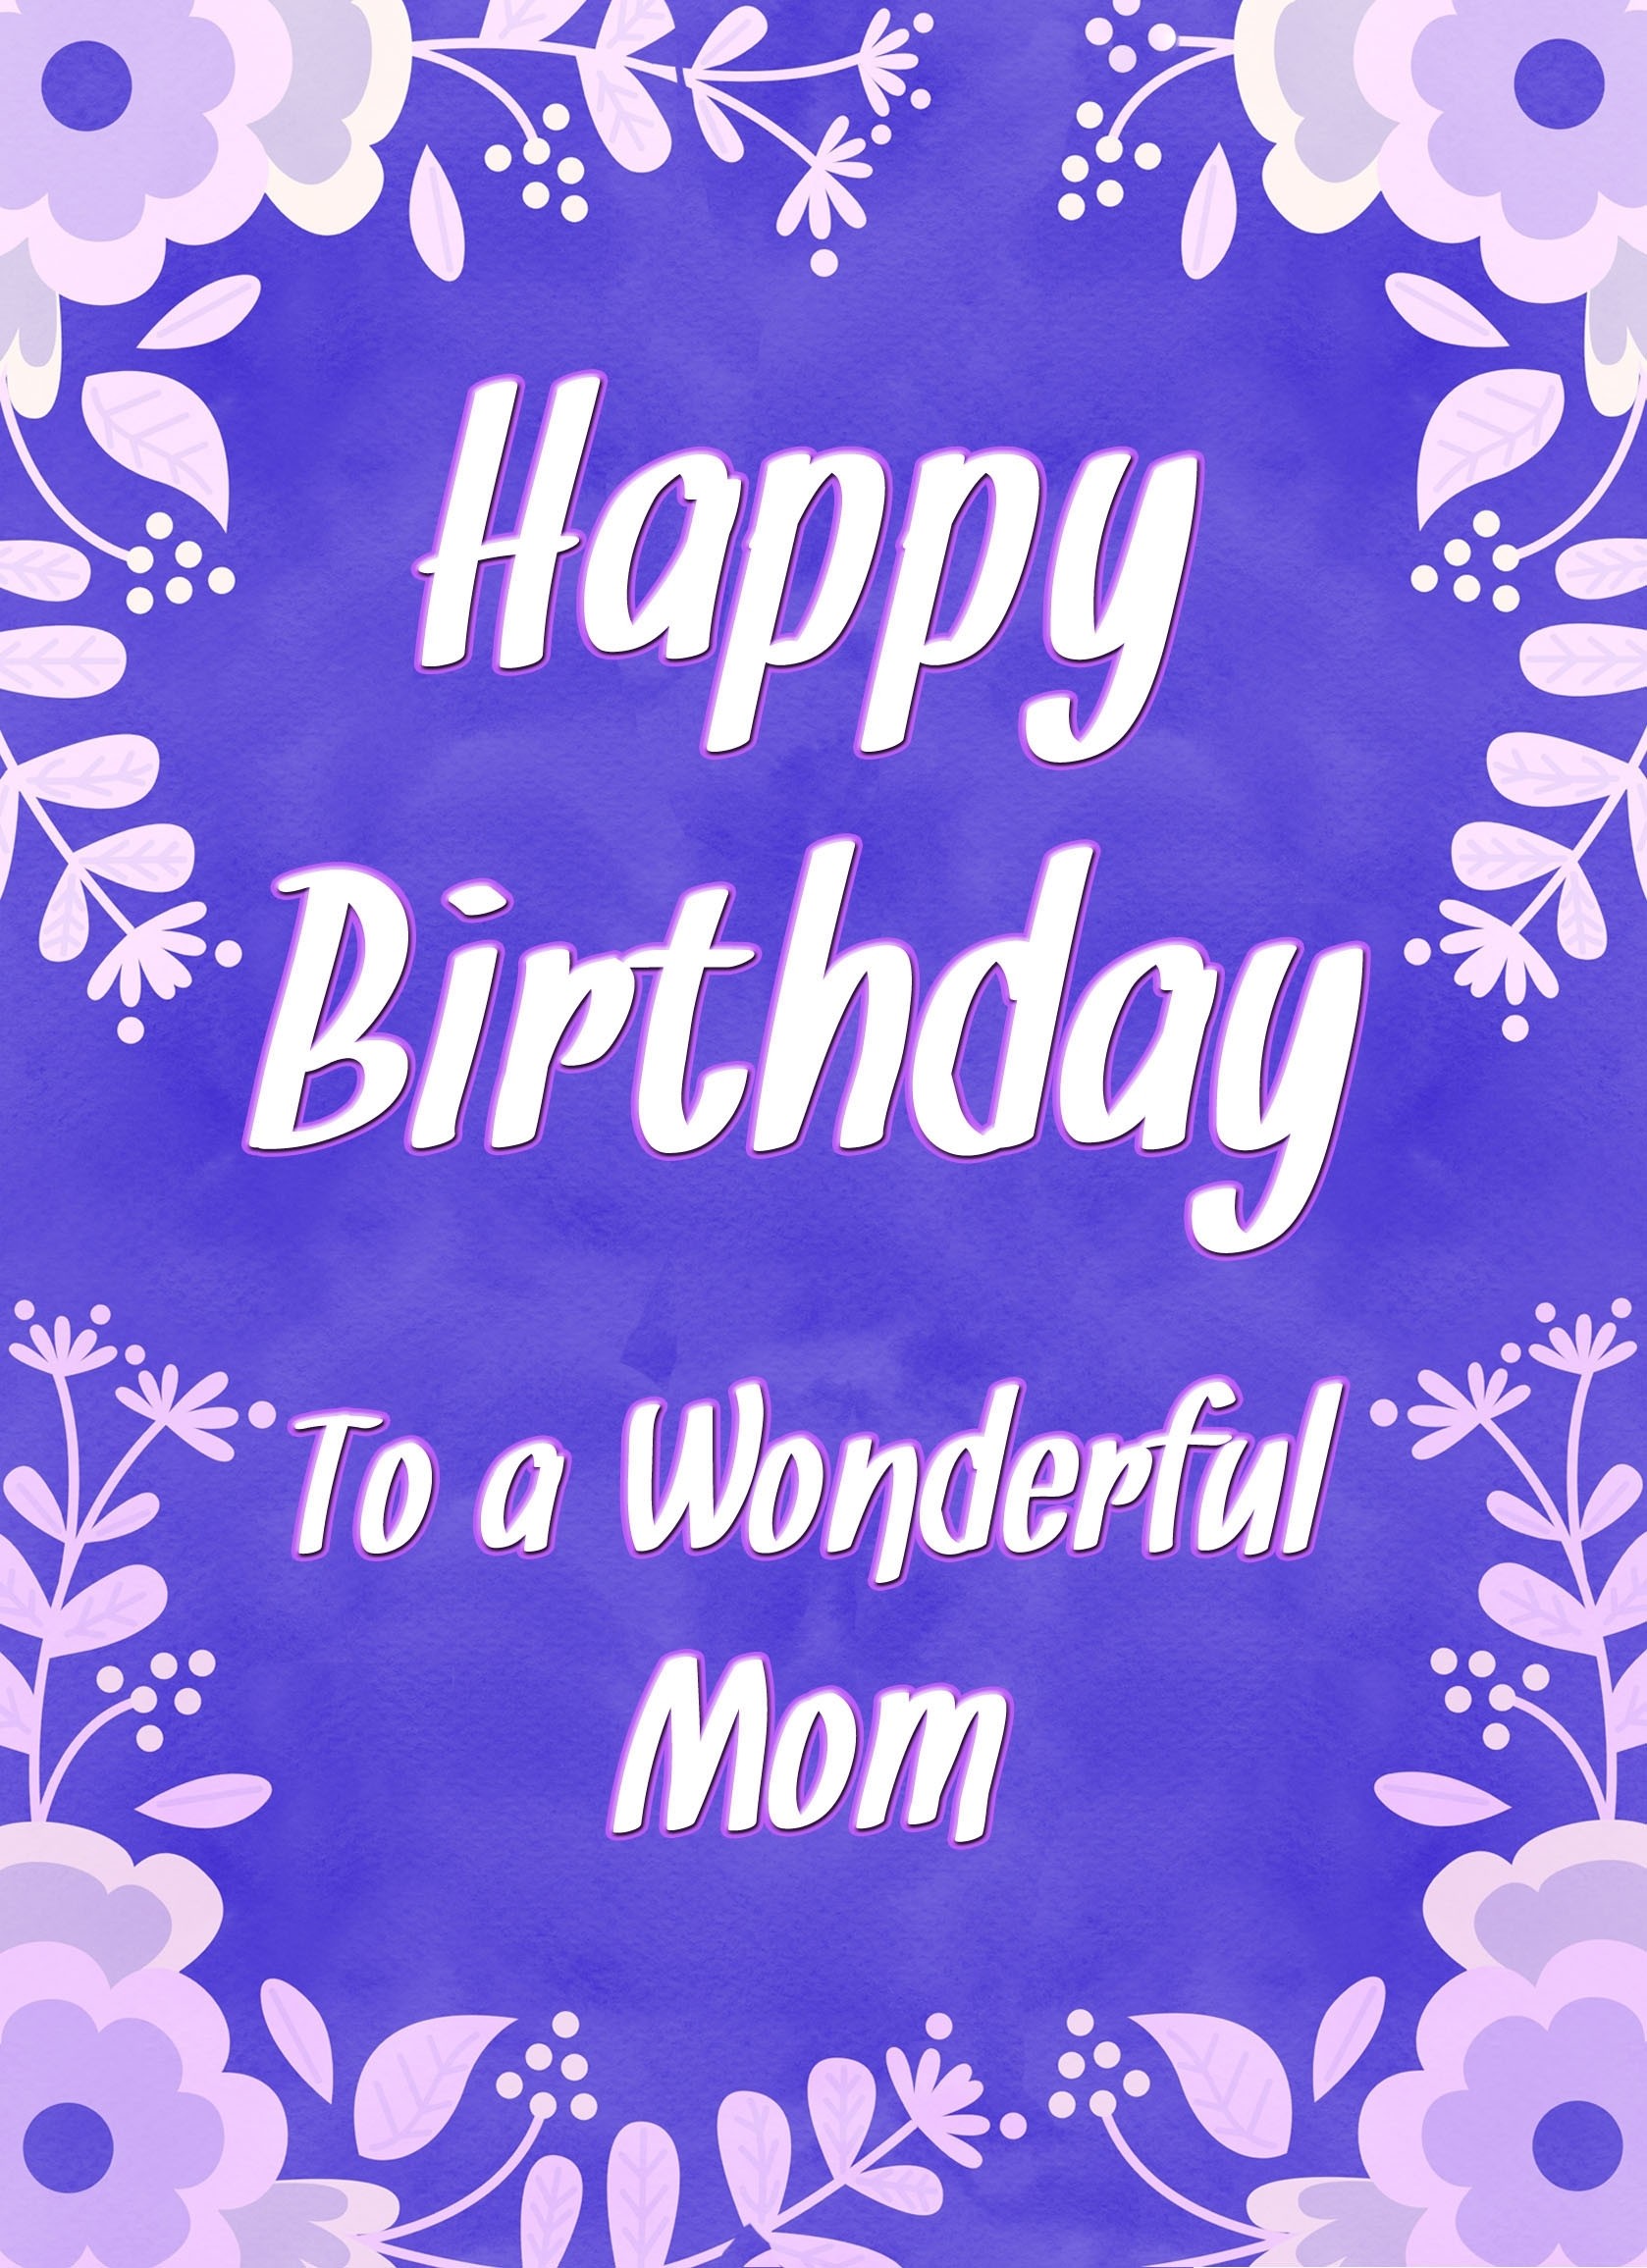 Birthday Card For Wonderful Mom (Purple Border)